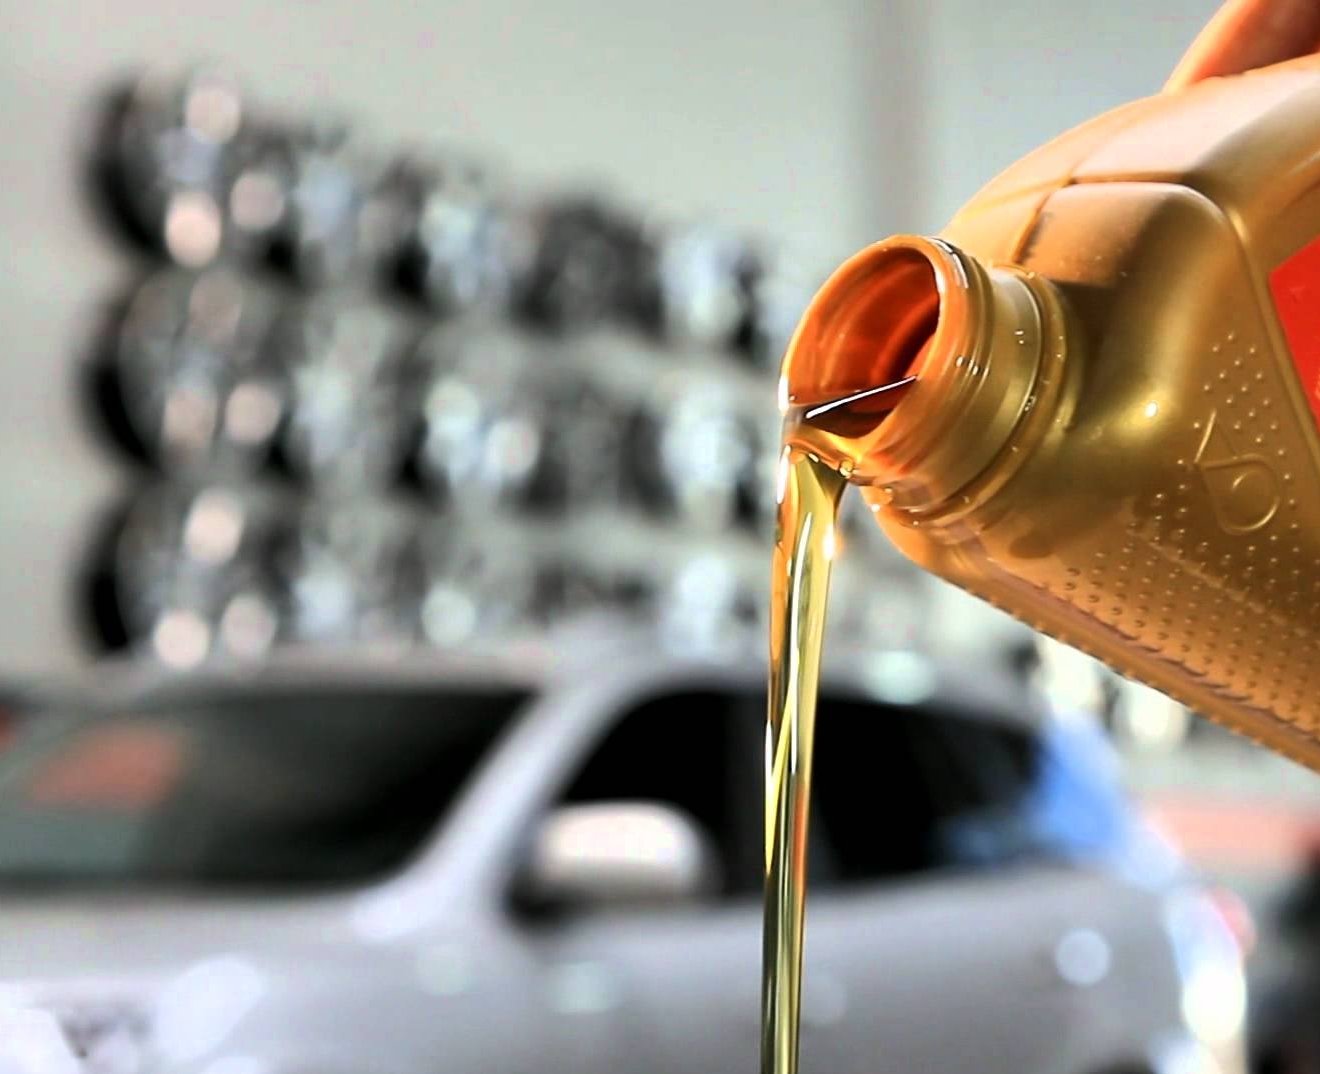 Quando trocar o óleo do carro?